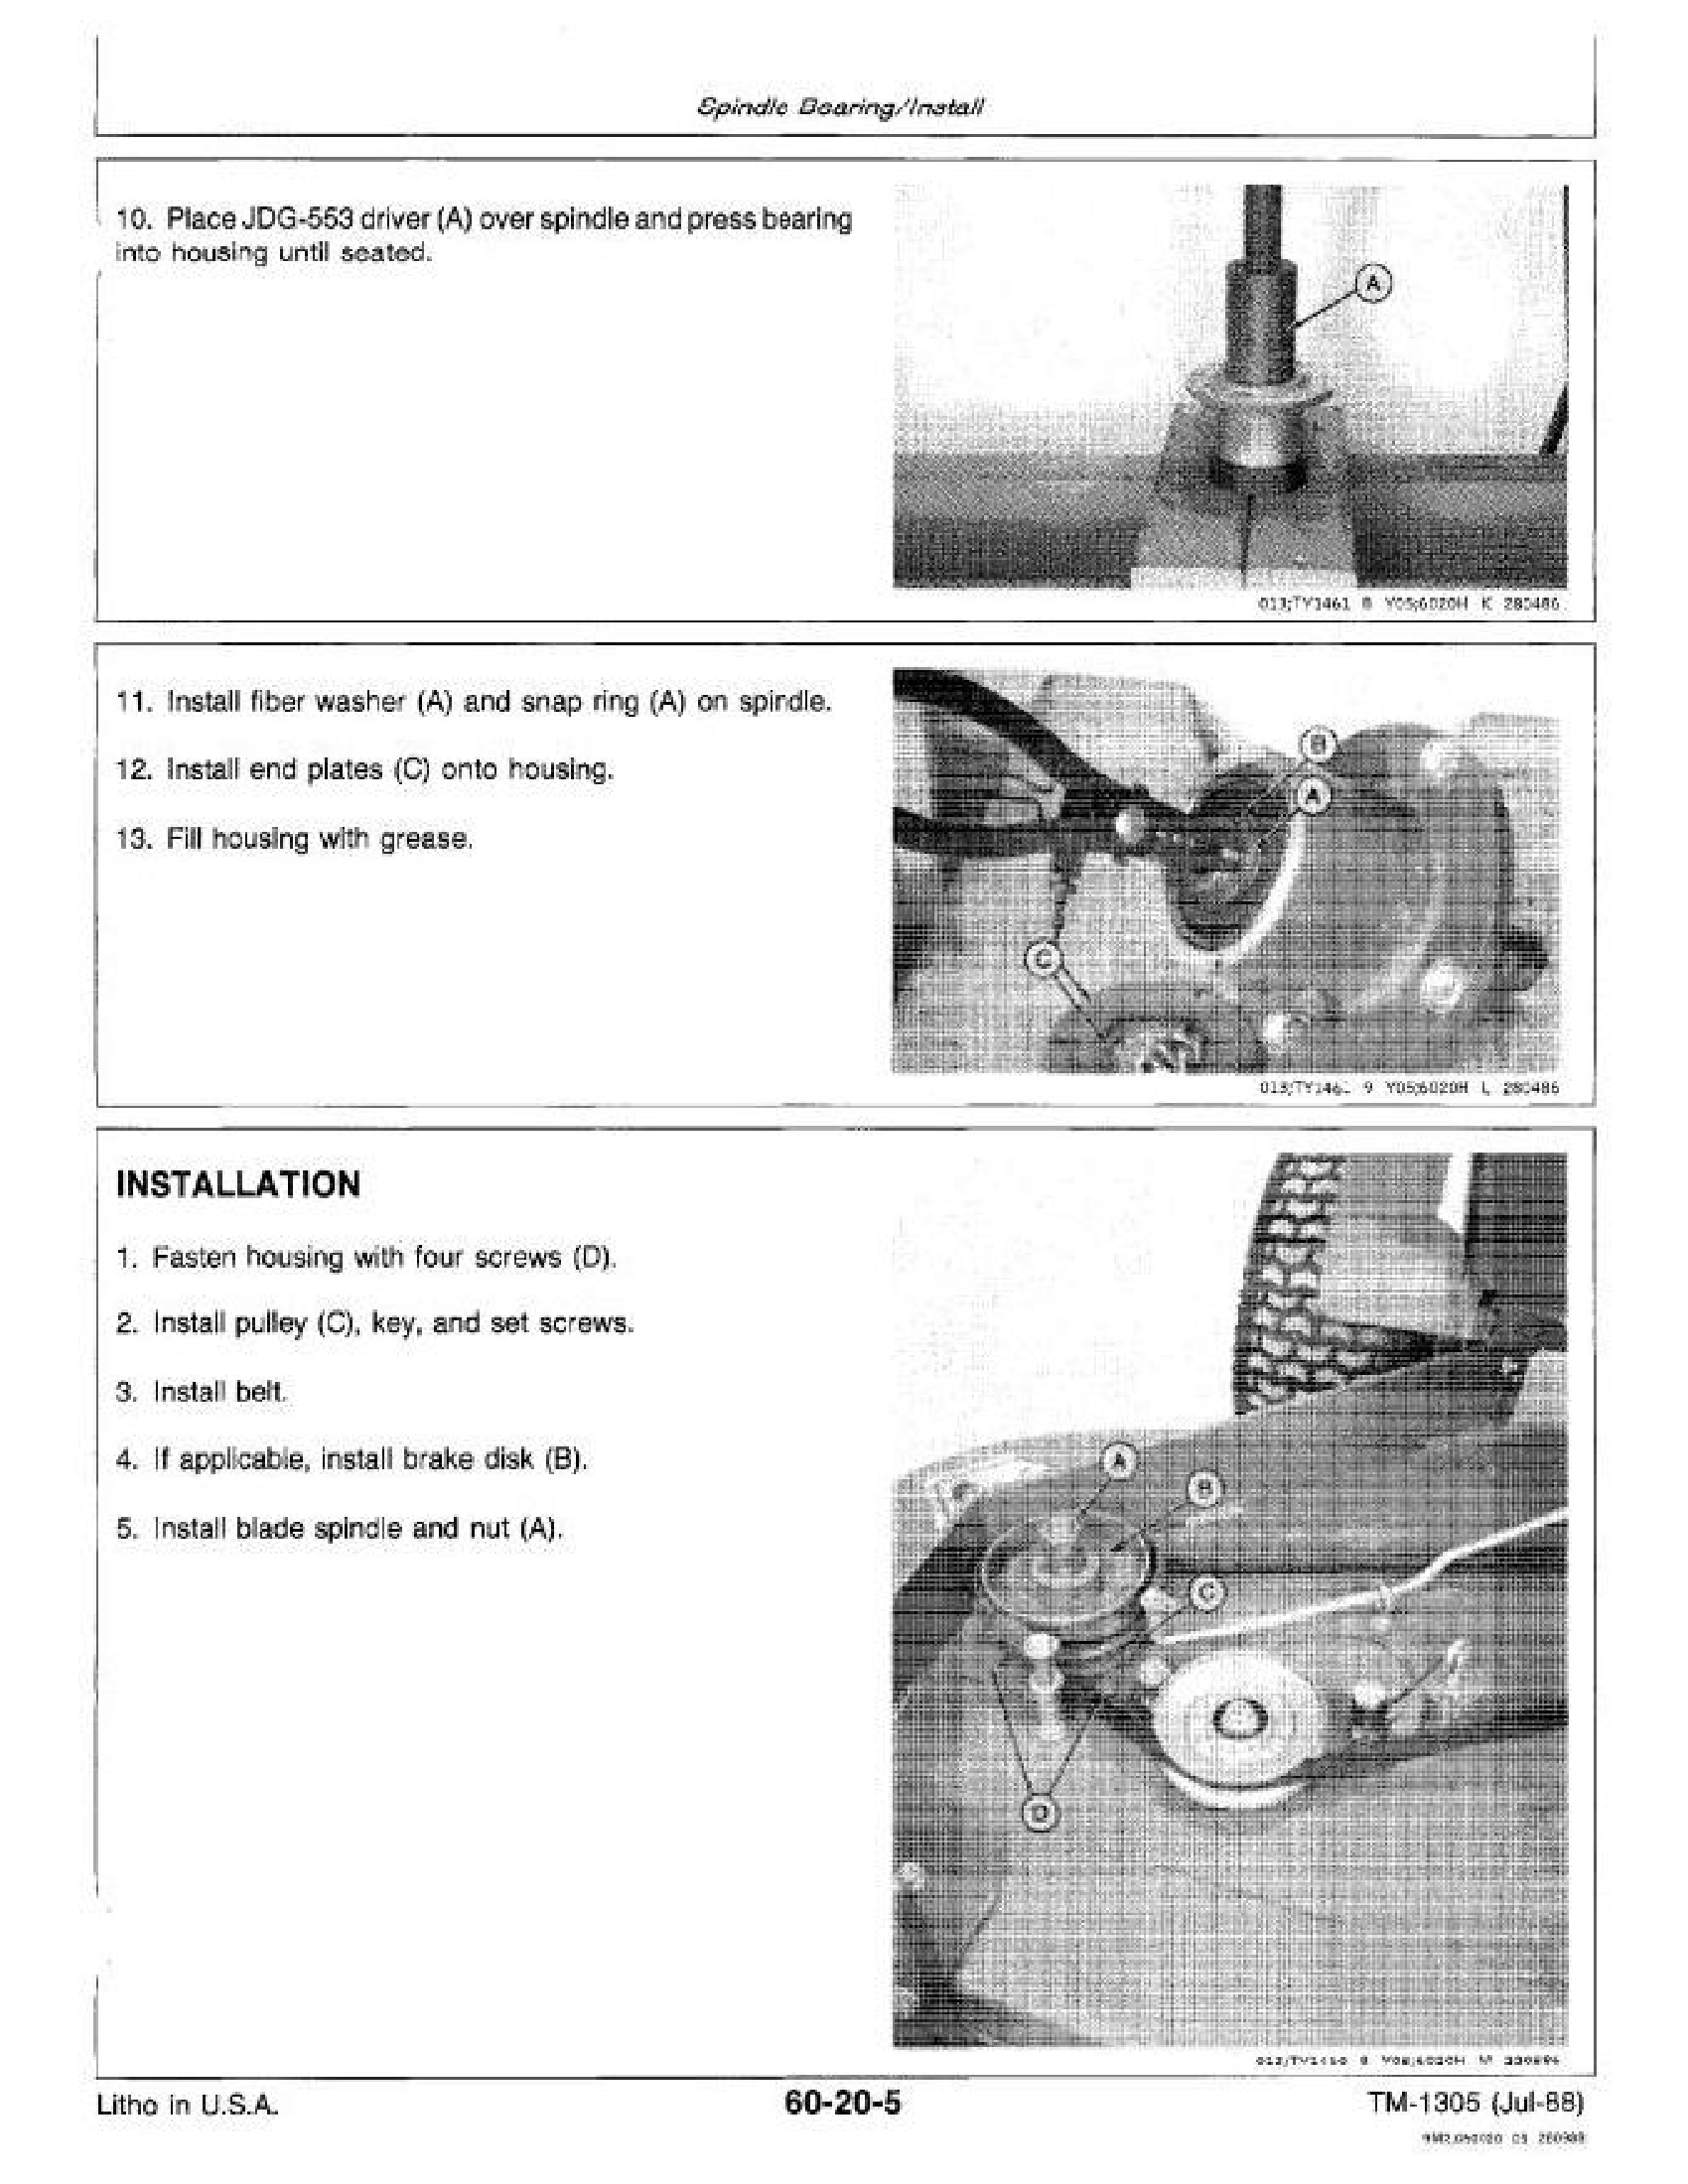 John Deere 52 manual pdf